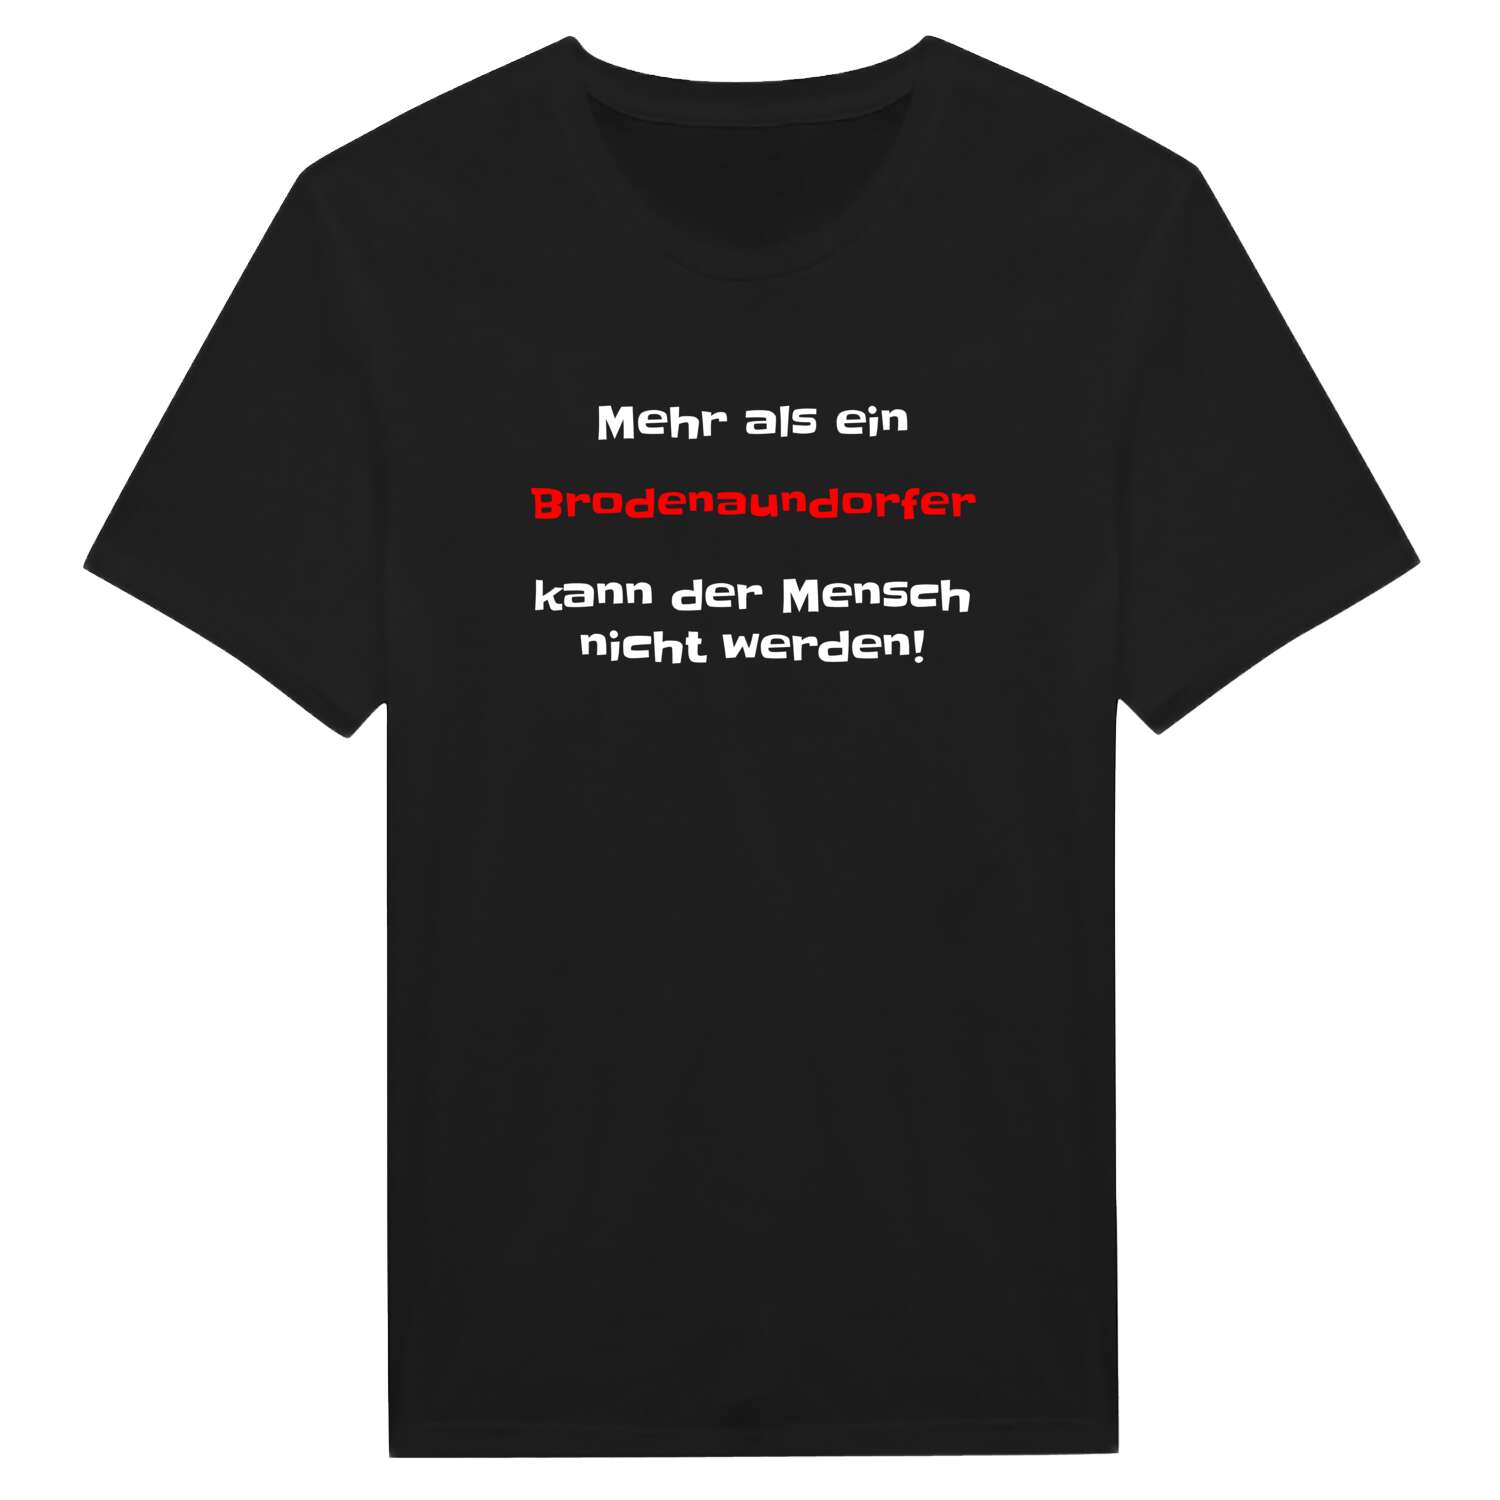 Brodenaundorf T-Shirt »Mehr als ein«